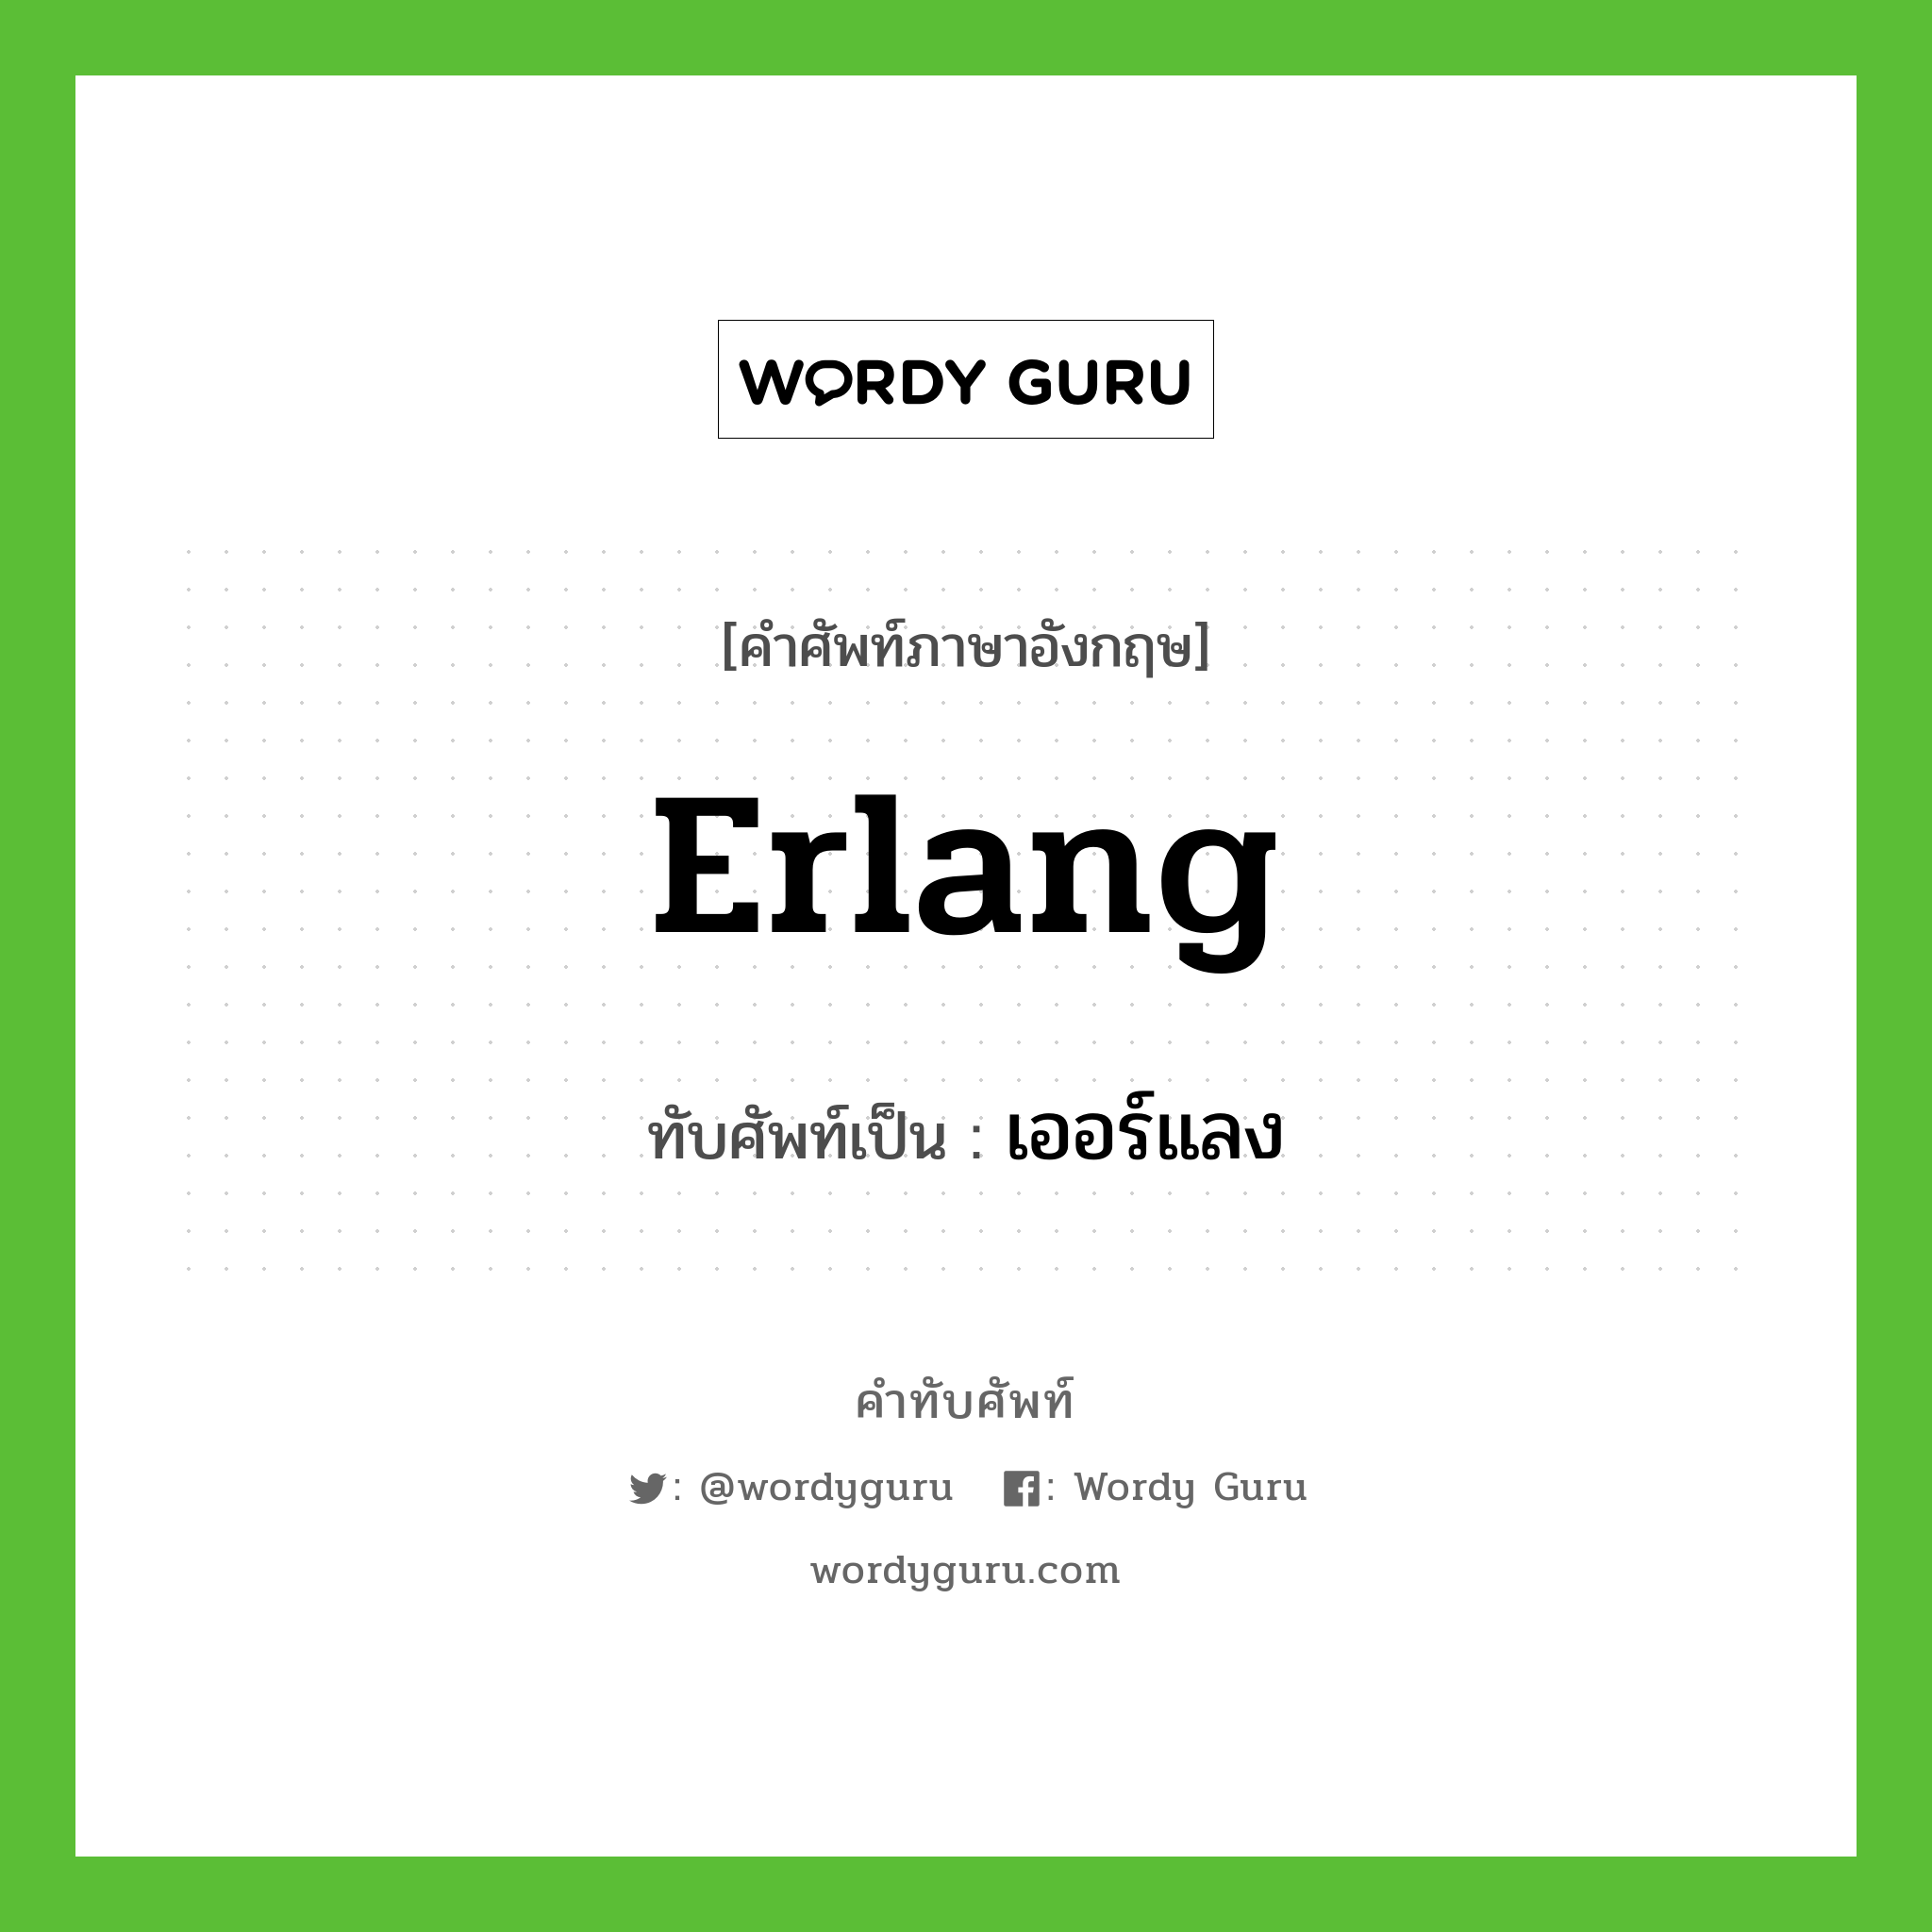 erlang เขียนเป็นคำไทยว่าอะไร?, คำศัพท์ภาษาอังกฤษ erlang ทับศัพท์เป็น เออร์แลง